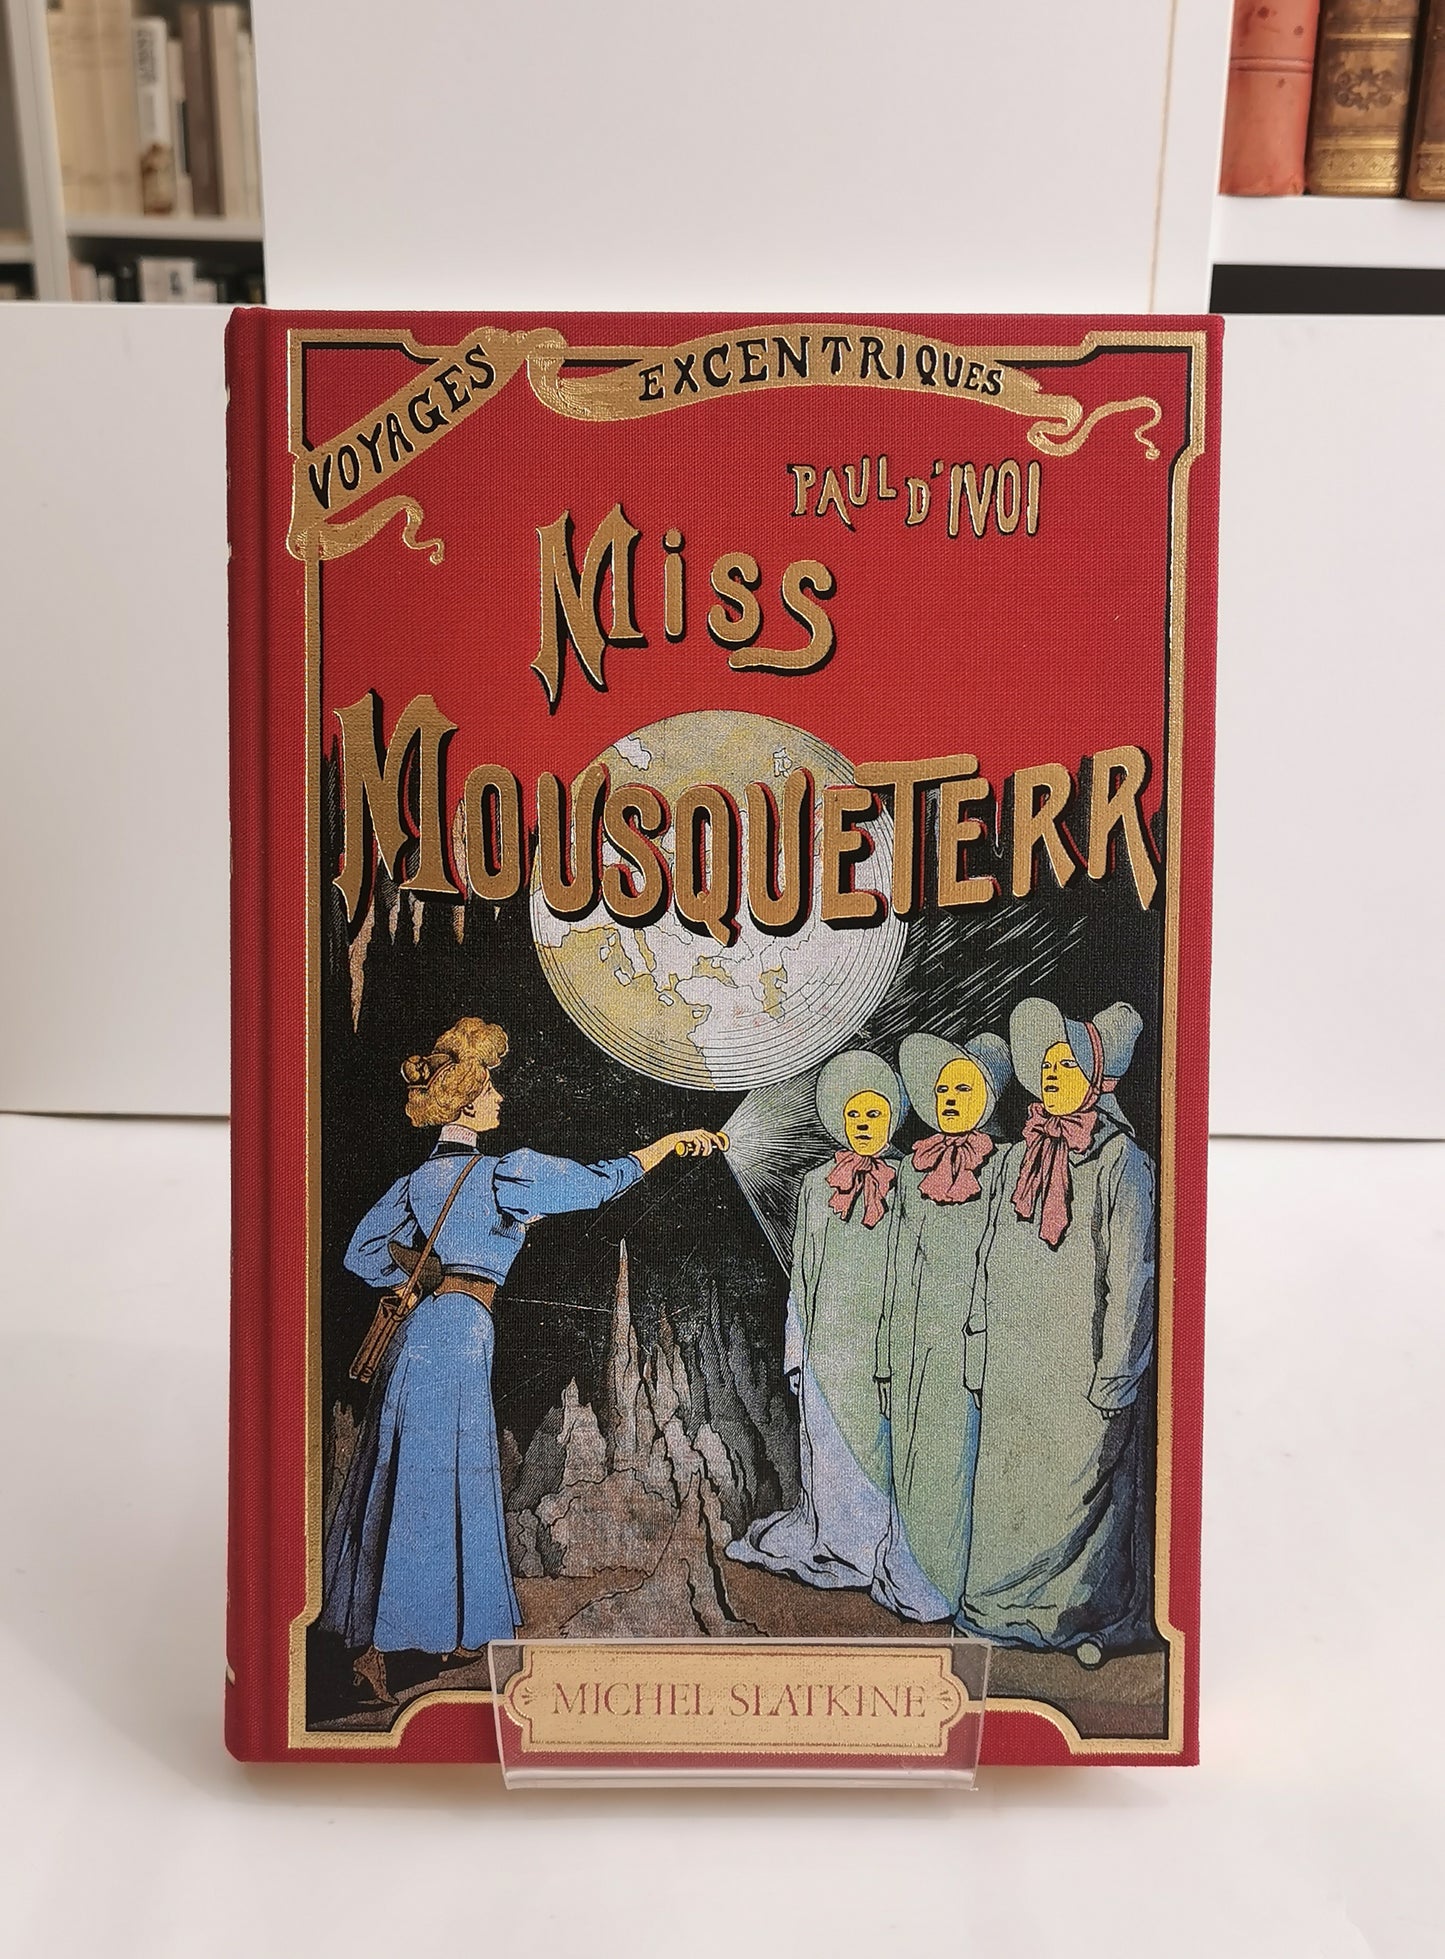 Miss Mousqueterr, Voyages excentriques (vol. 14), Ivoi, Paul d', 1907, ed. Michel Slatkine, 1984.